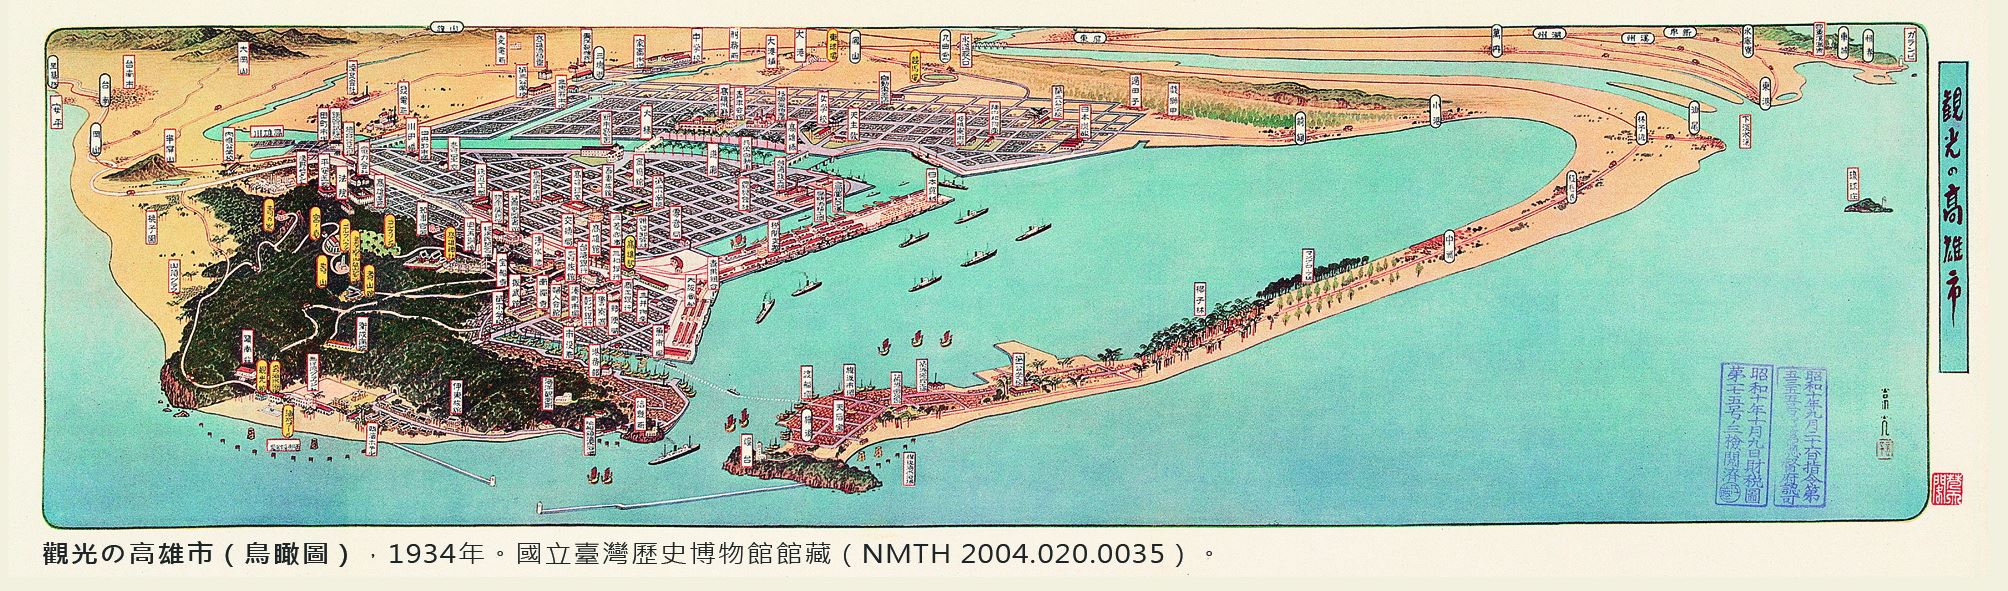 地圖書籤7(1935年-高雄)